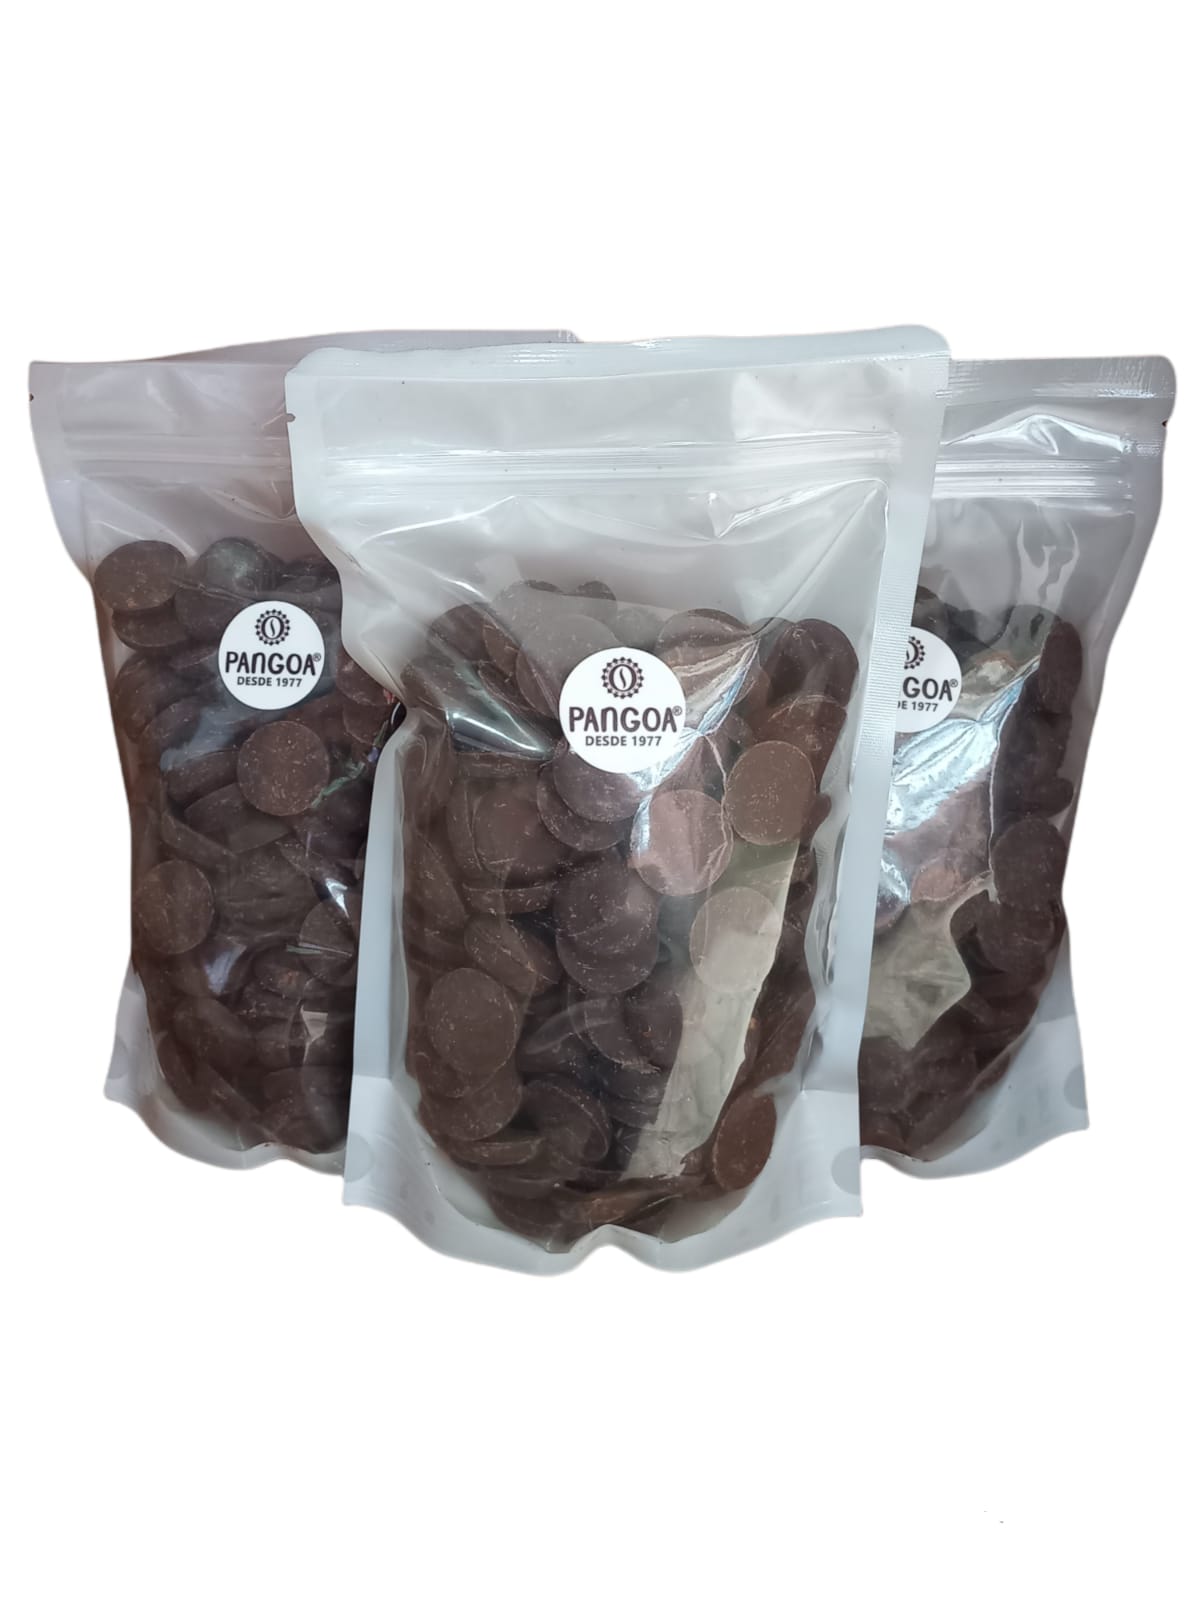 Producto Pangoa Pasta de Cacao en Obleas 500g